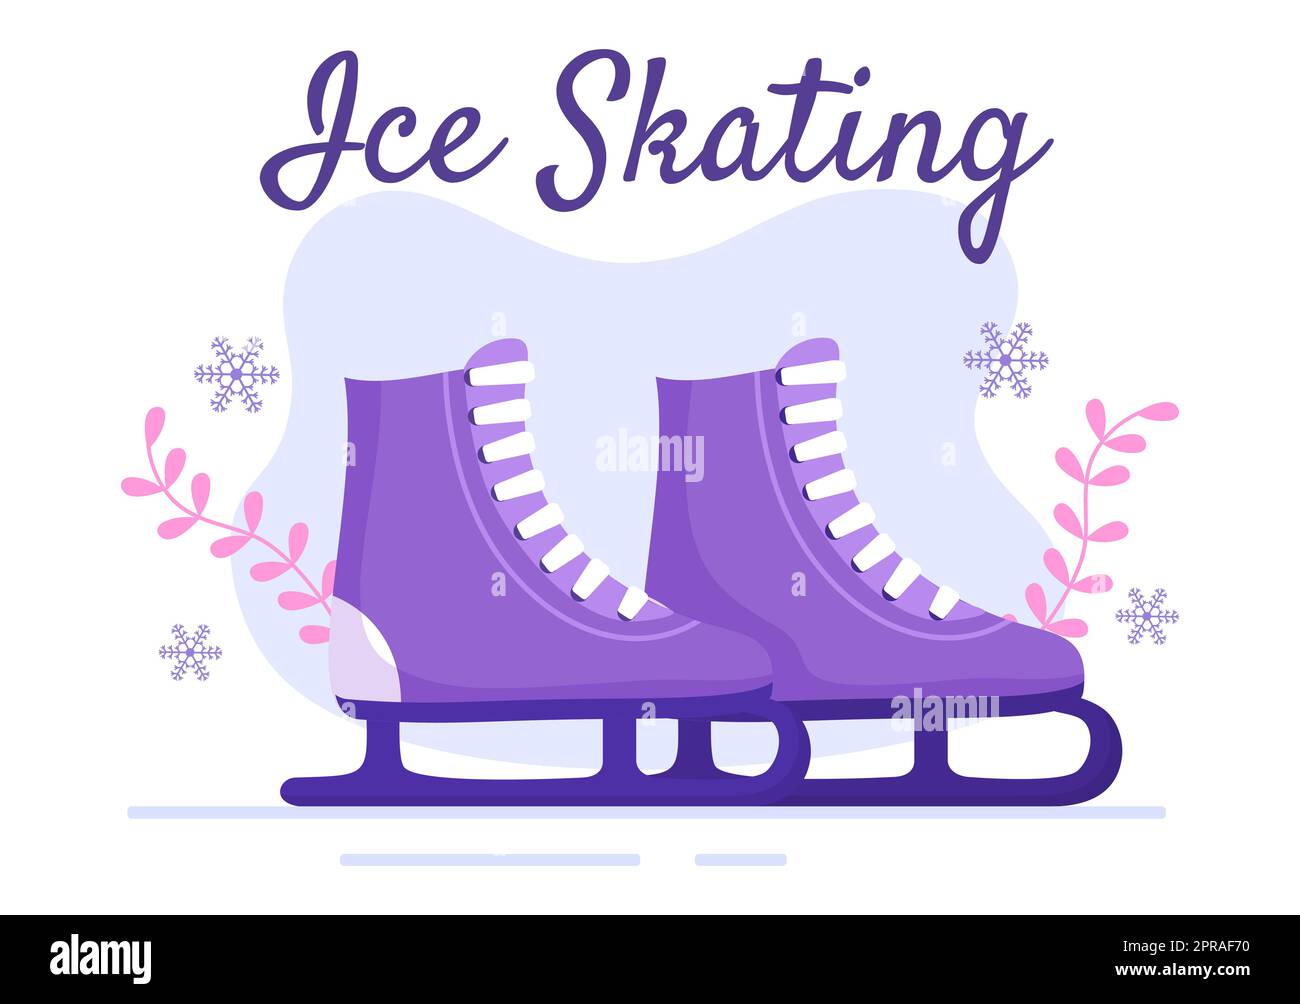 Patinage sur glace dessin main dessin animé dessin animé à la main Illustration de l'hiver Fun activités de sport en plein air sur la patinoire avec vêtements d'extérieur saisonniers Banque D'Images